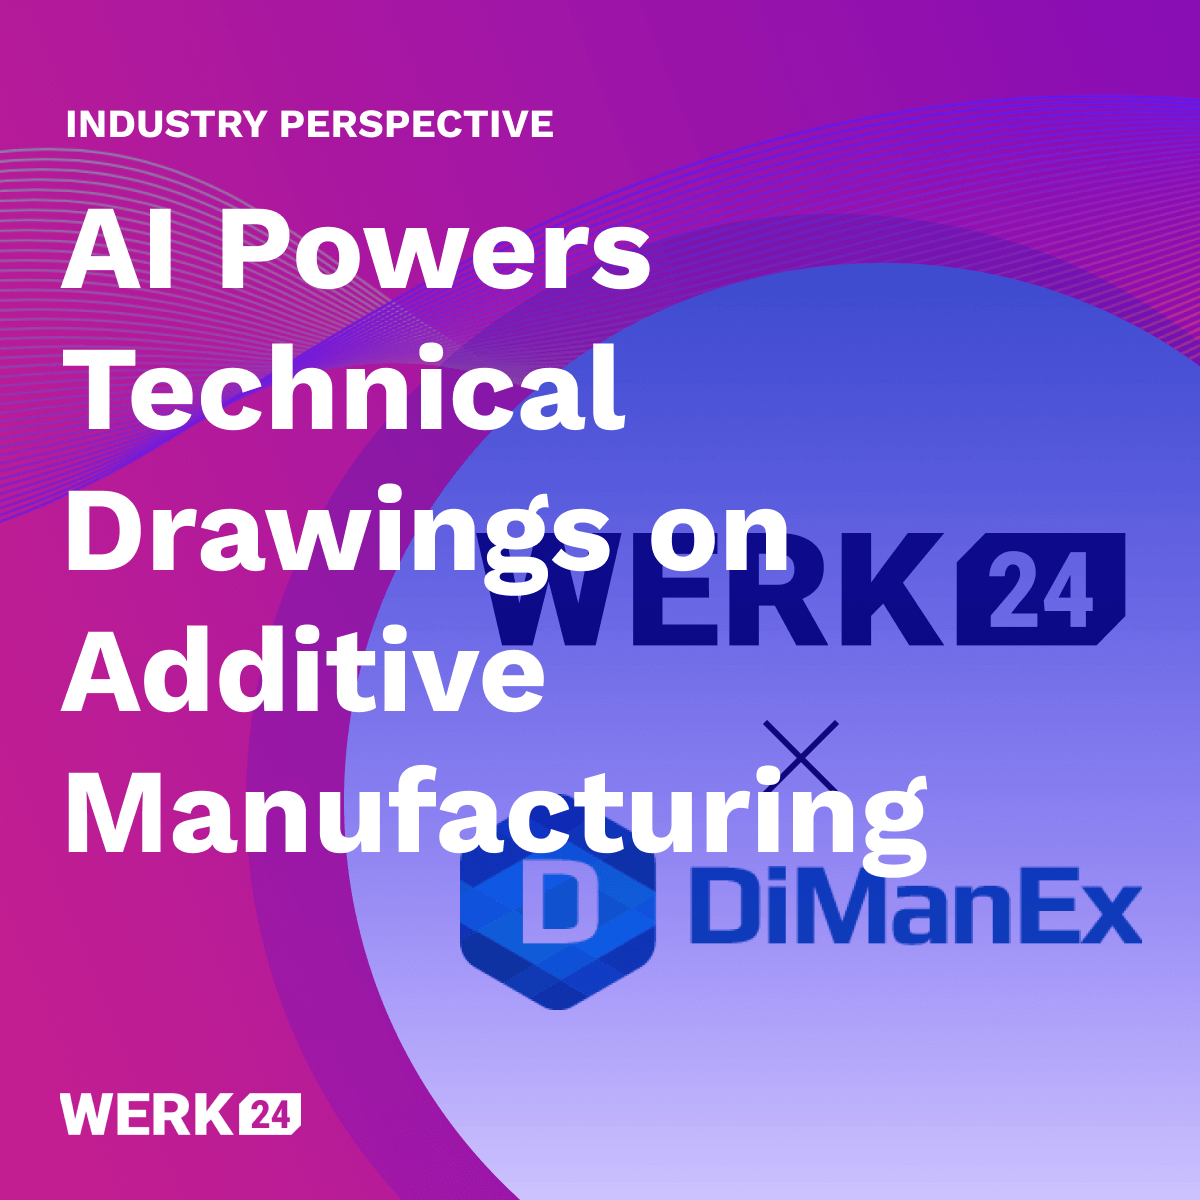 Partenariat entre DiManEx et Werk24